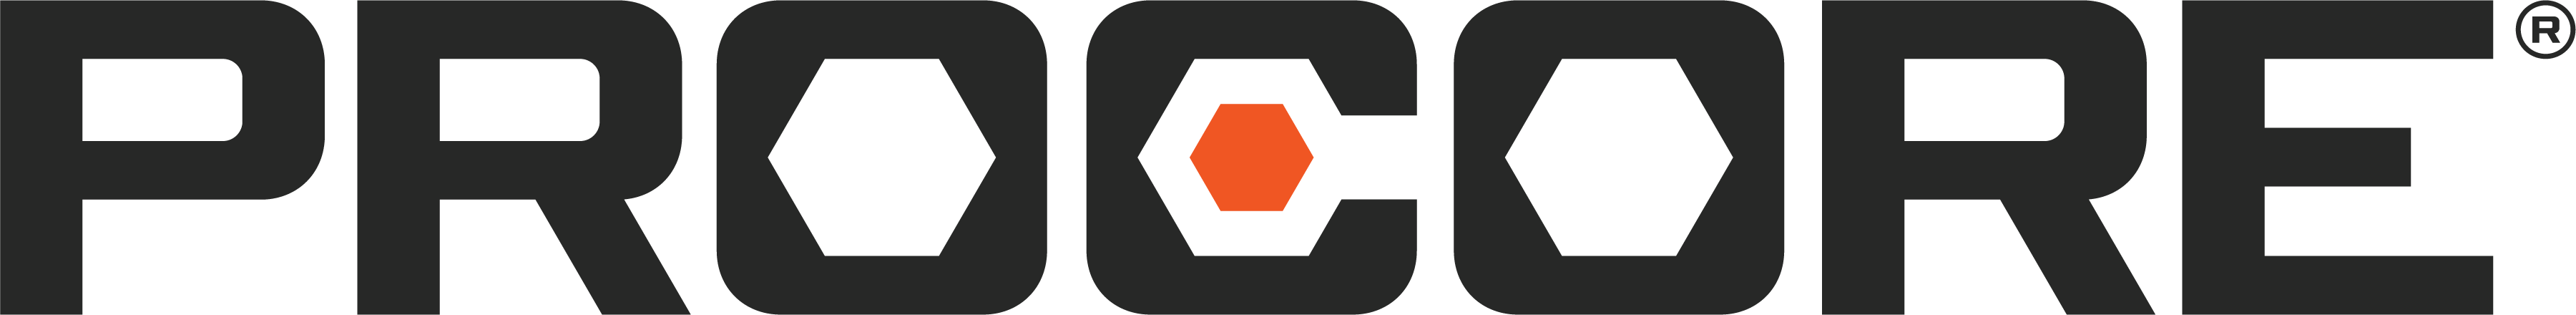 Procore_Logo